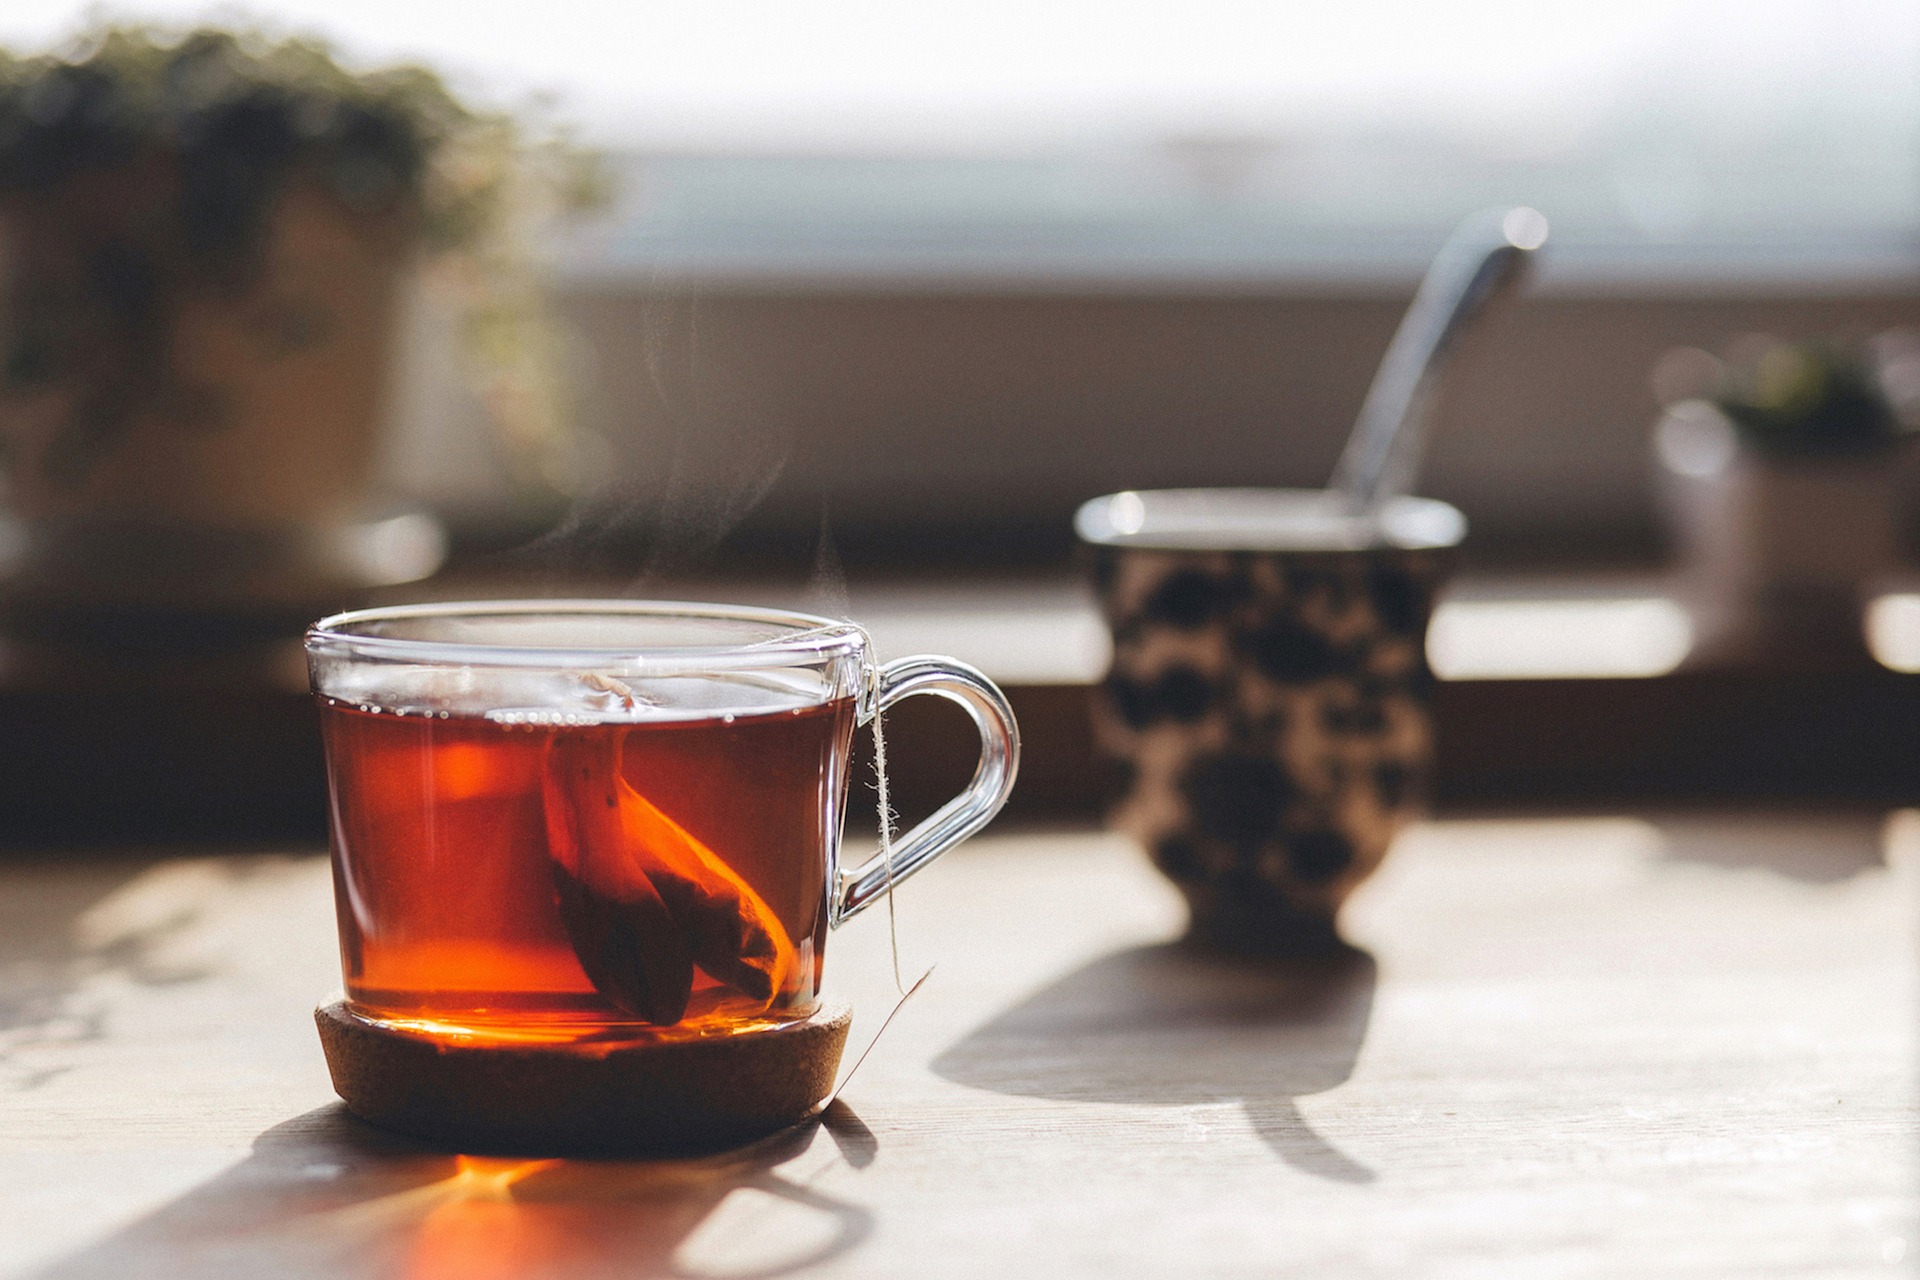 Çay bardağı seti alırken nelere dikkat etmeliyiz?